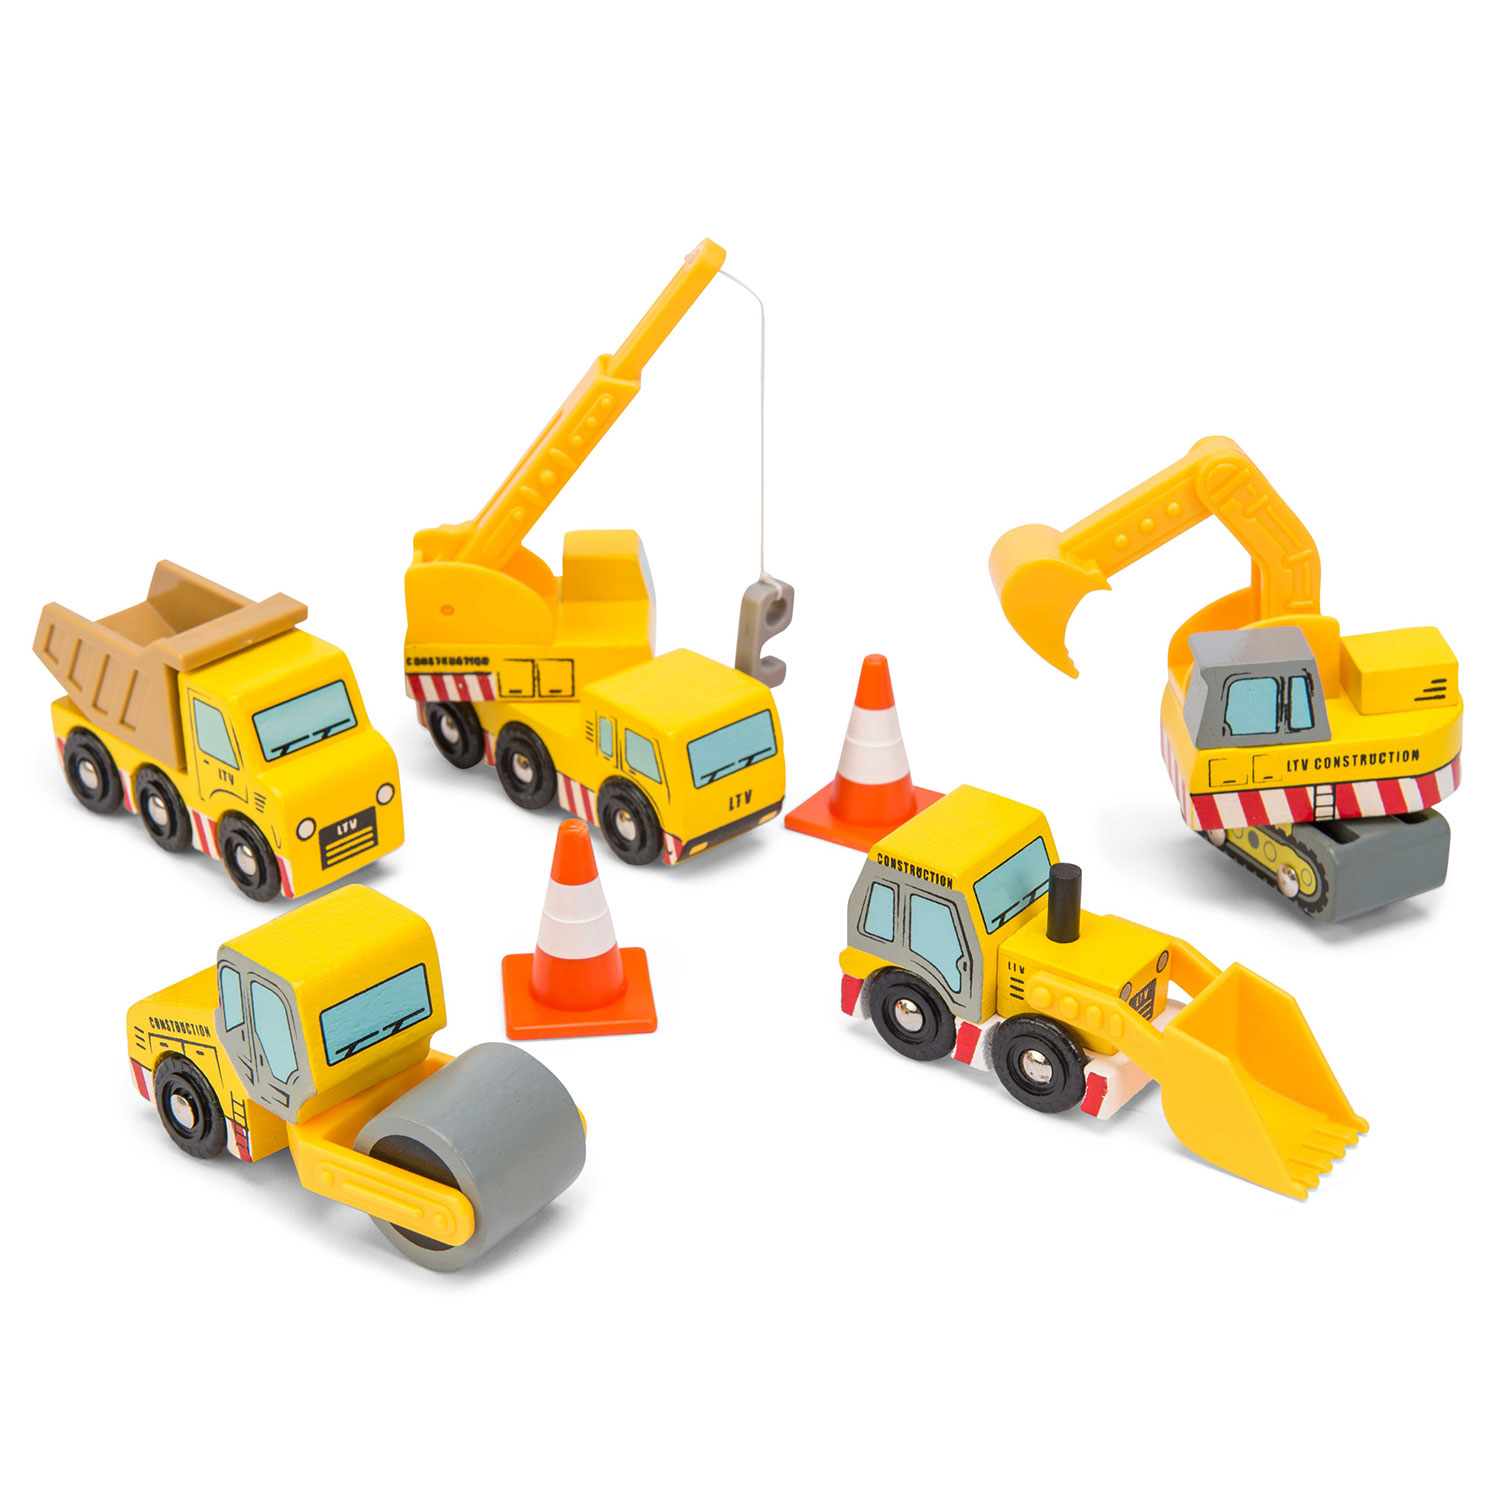 Baufahrzeuge / Construction Set - 2022